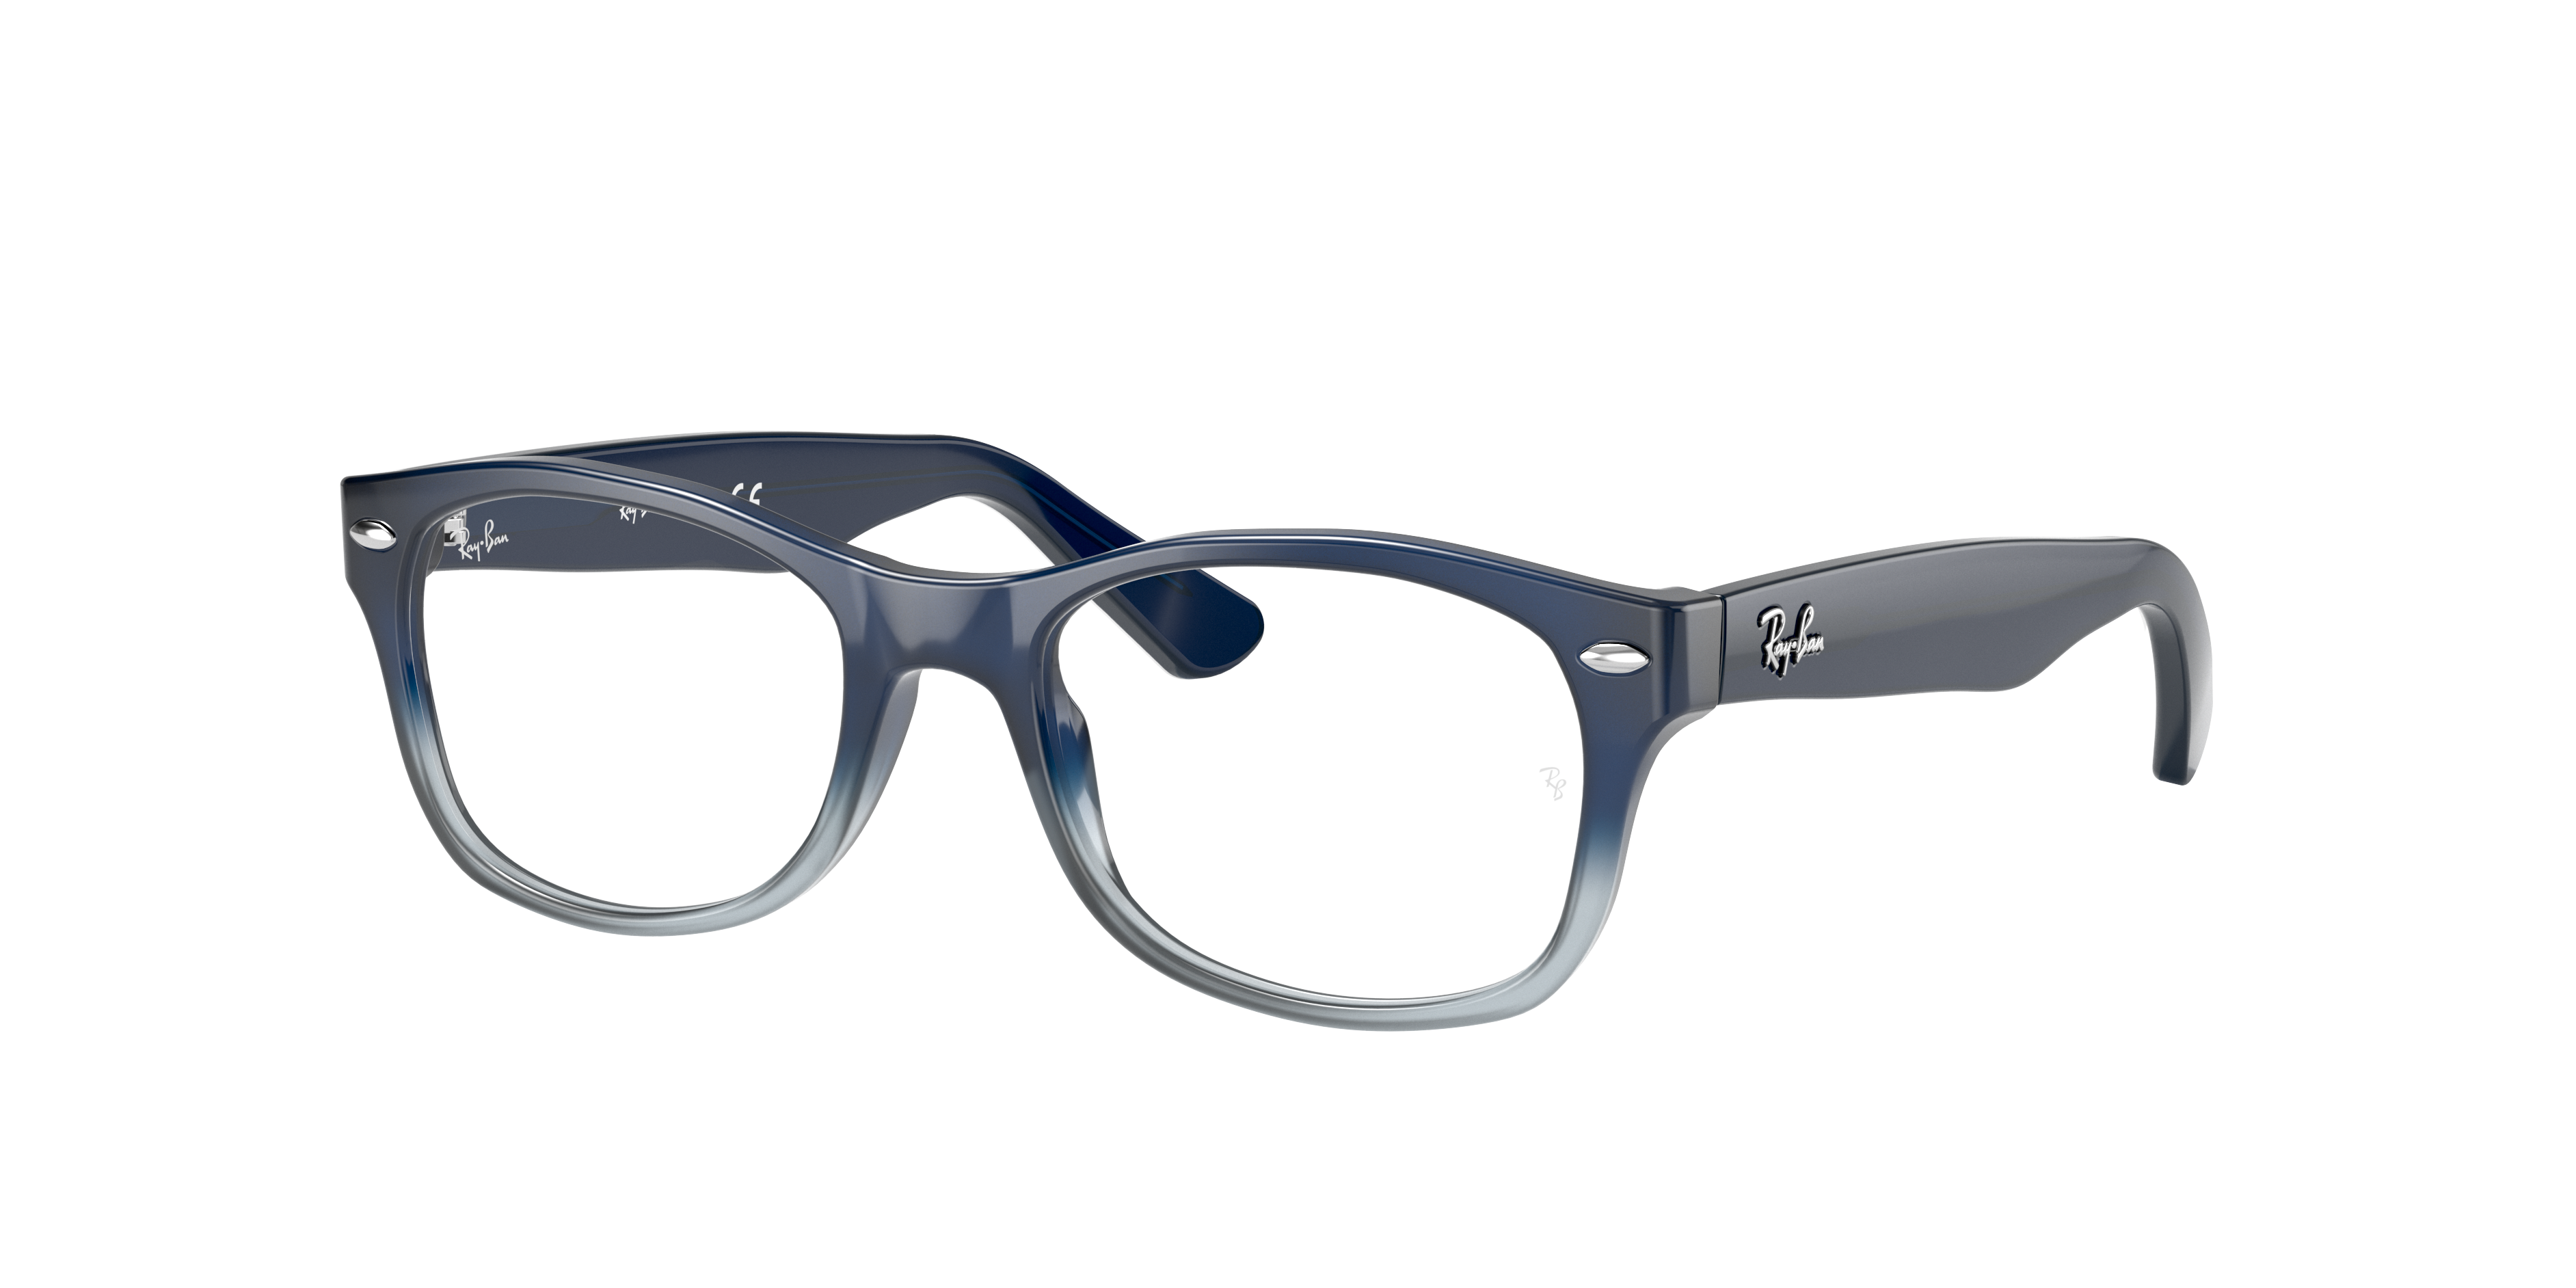 ESW00542 - Pasha de Cartier太阳眼镜 - 抛光镀铂饰面钛金属，蓝色镜片 - 卡地亚